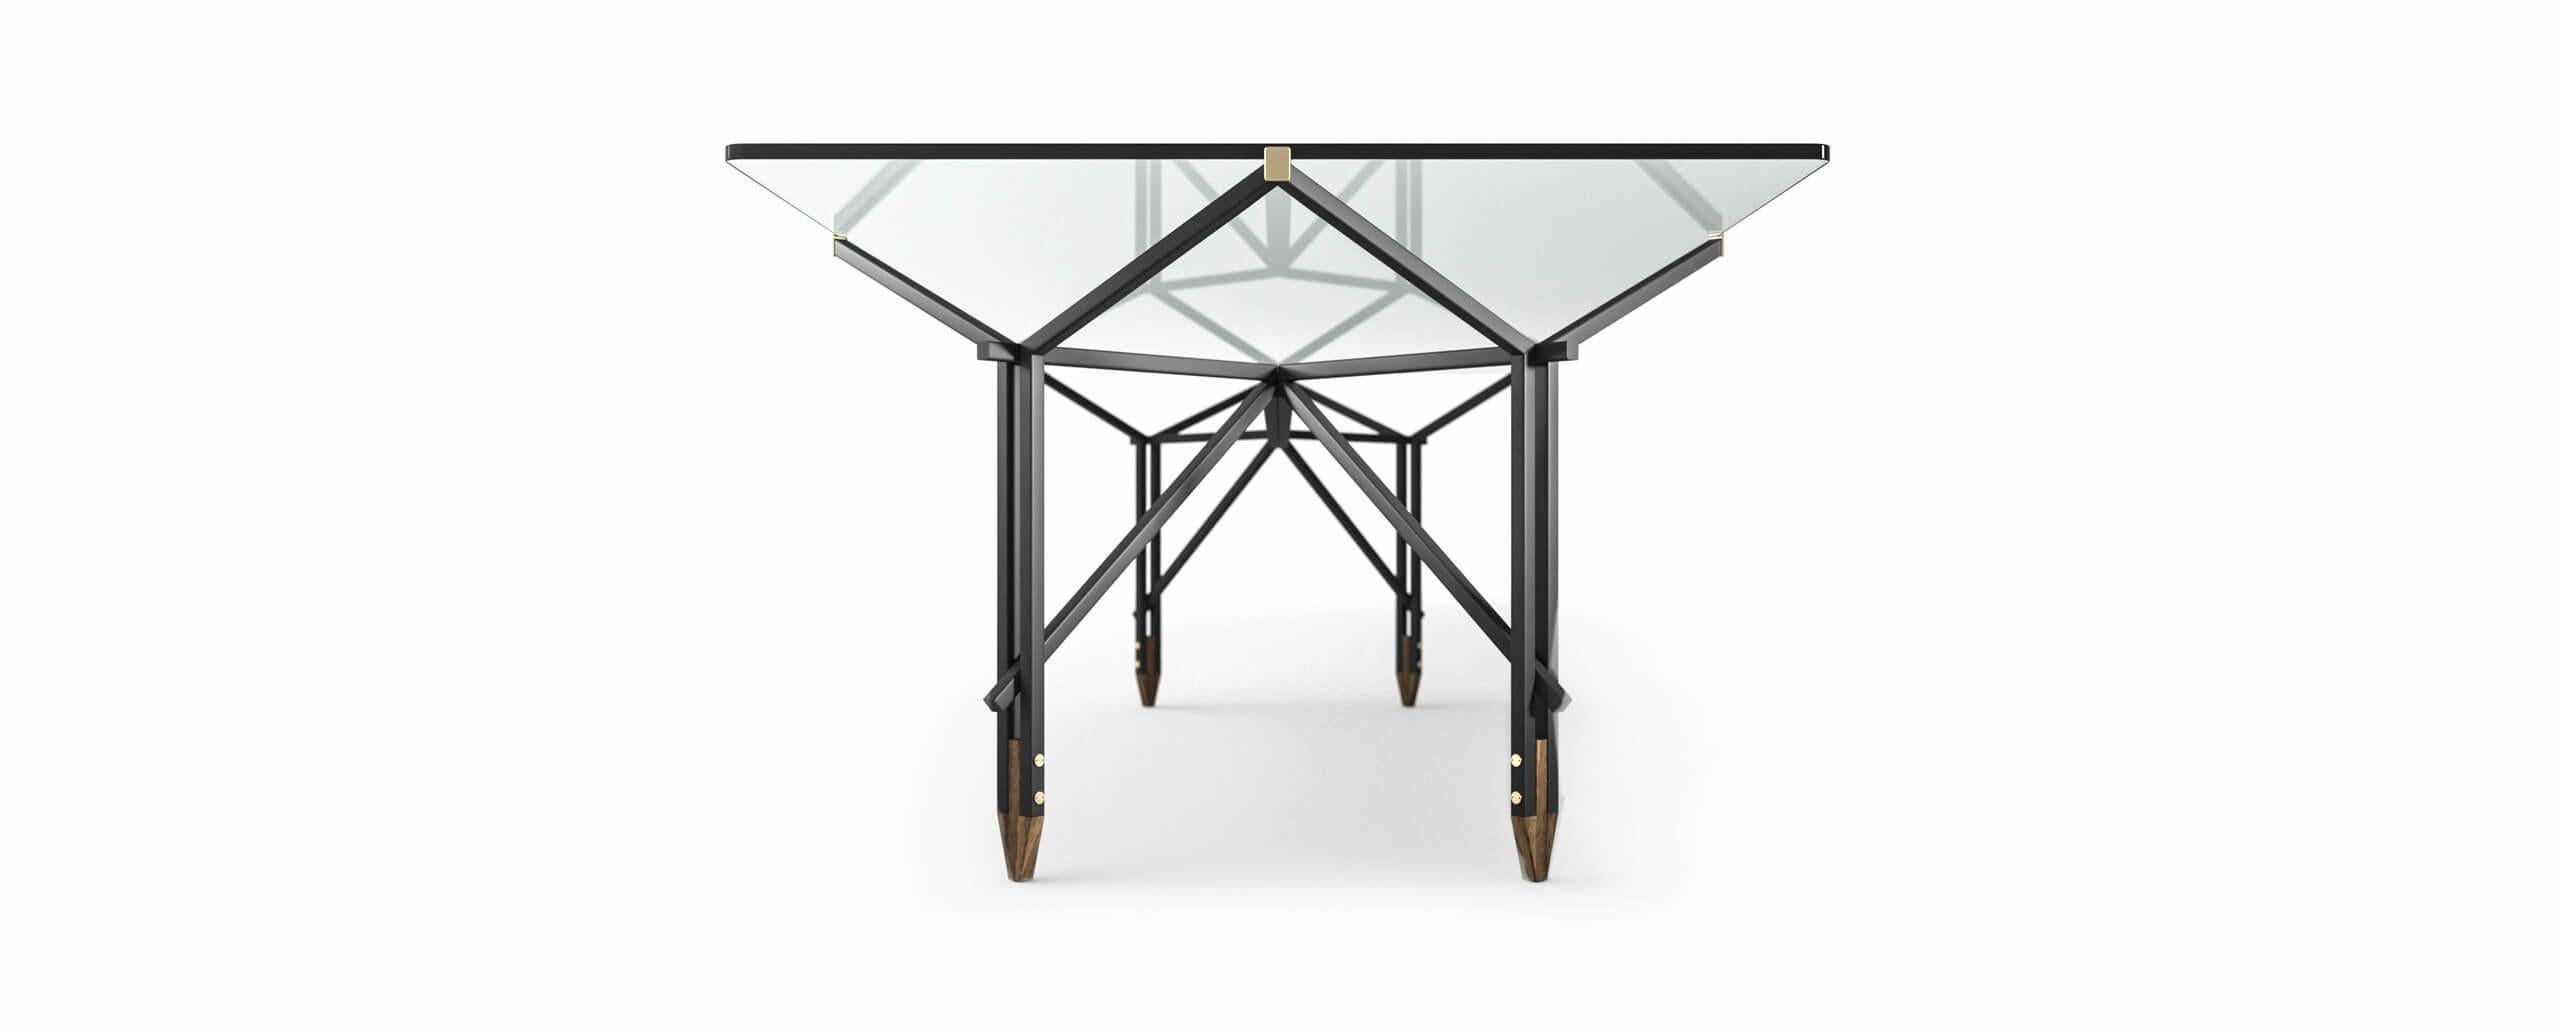 1955 von Ico Parisi entworfener Tisch, der 2020 neu aufgelegt wird.
Hergestellt von Cassina in Italien.

Das Design dieses 1955 entworfenen Tisches - ein Möbelstück, das von Ico Parisi als zentrales Element der Wohnung betrachtet wird - begleitet